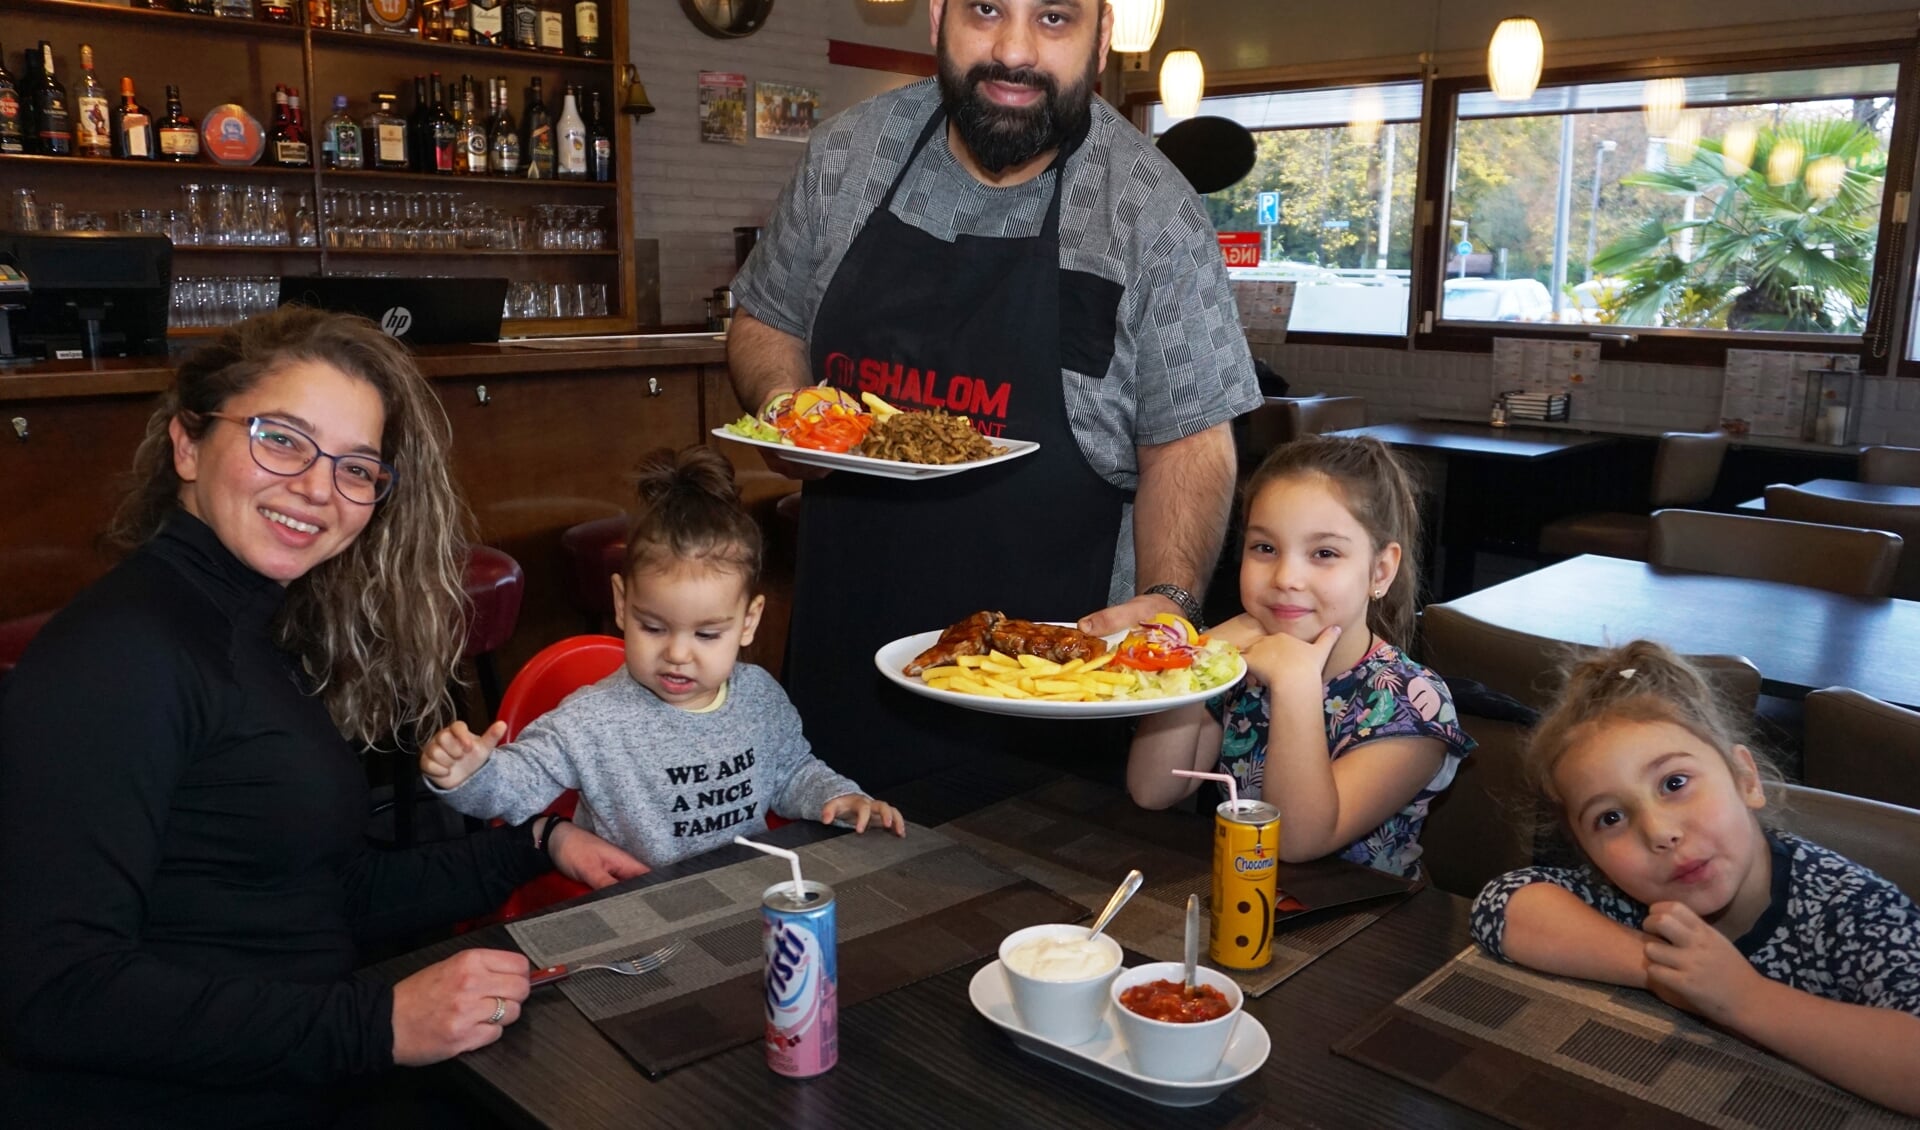 'Shalom is ook heel geschikt als familierestaurant', zegt Seyhan Arikan terwijl hij op zijn vrouw en kinderen wijst. Foto: VSK